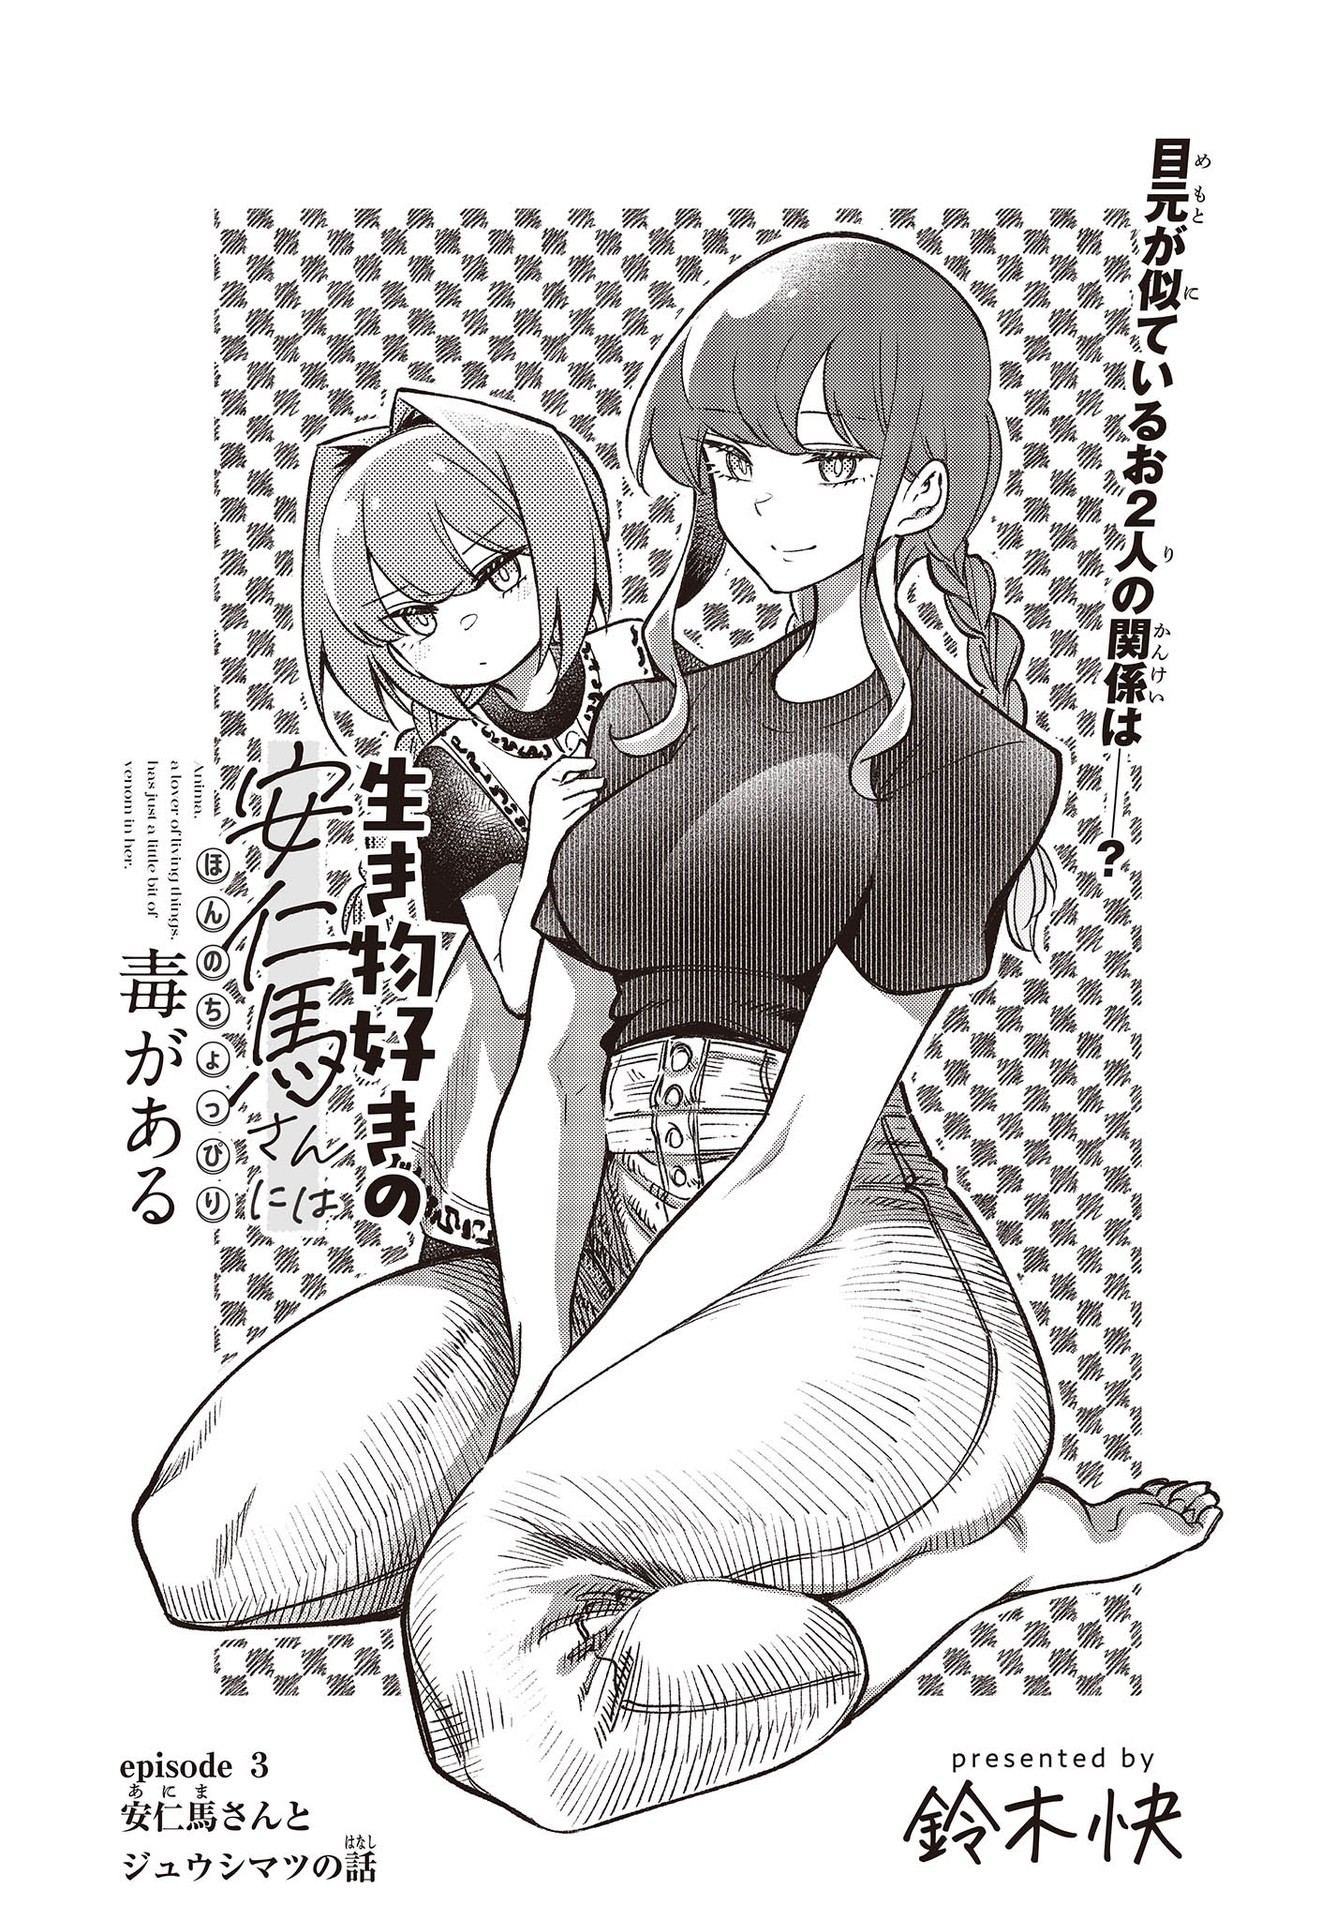 Ikimono-suki no Anima-san ni wa Honno Choppiri Doku ga aru - Chapter 3 - Page 3